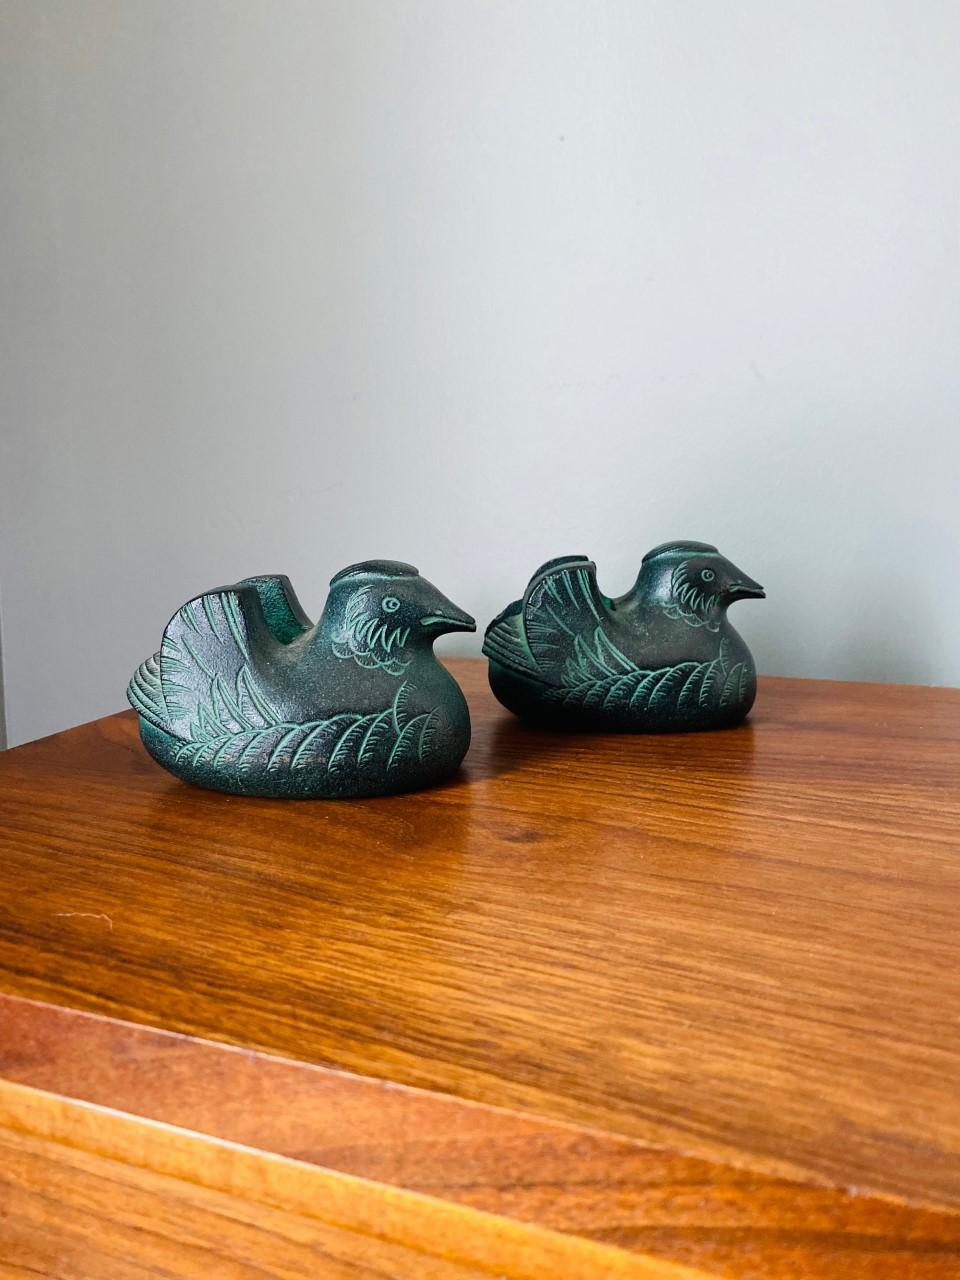 Incroyable paire de porte-écrans en bronze japonais coulé à la main en forme de canard mandarin avec plumage détaillé, période Taisho 1920. Chacune de ces deux sculptures est en très bon état avec une belle finition patinée. De magnifiques œuvres